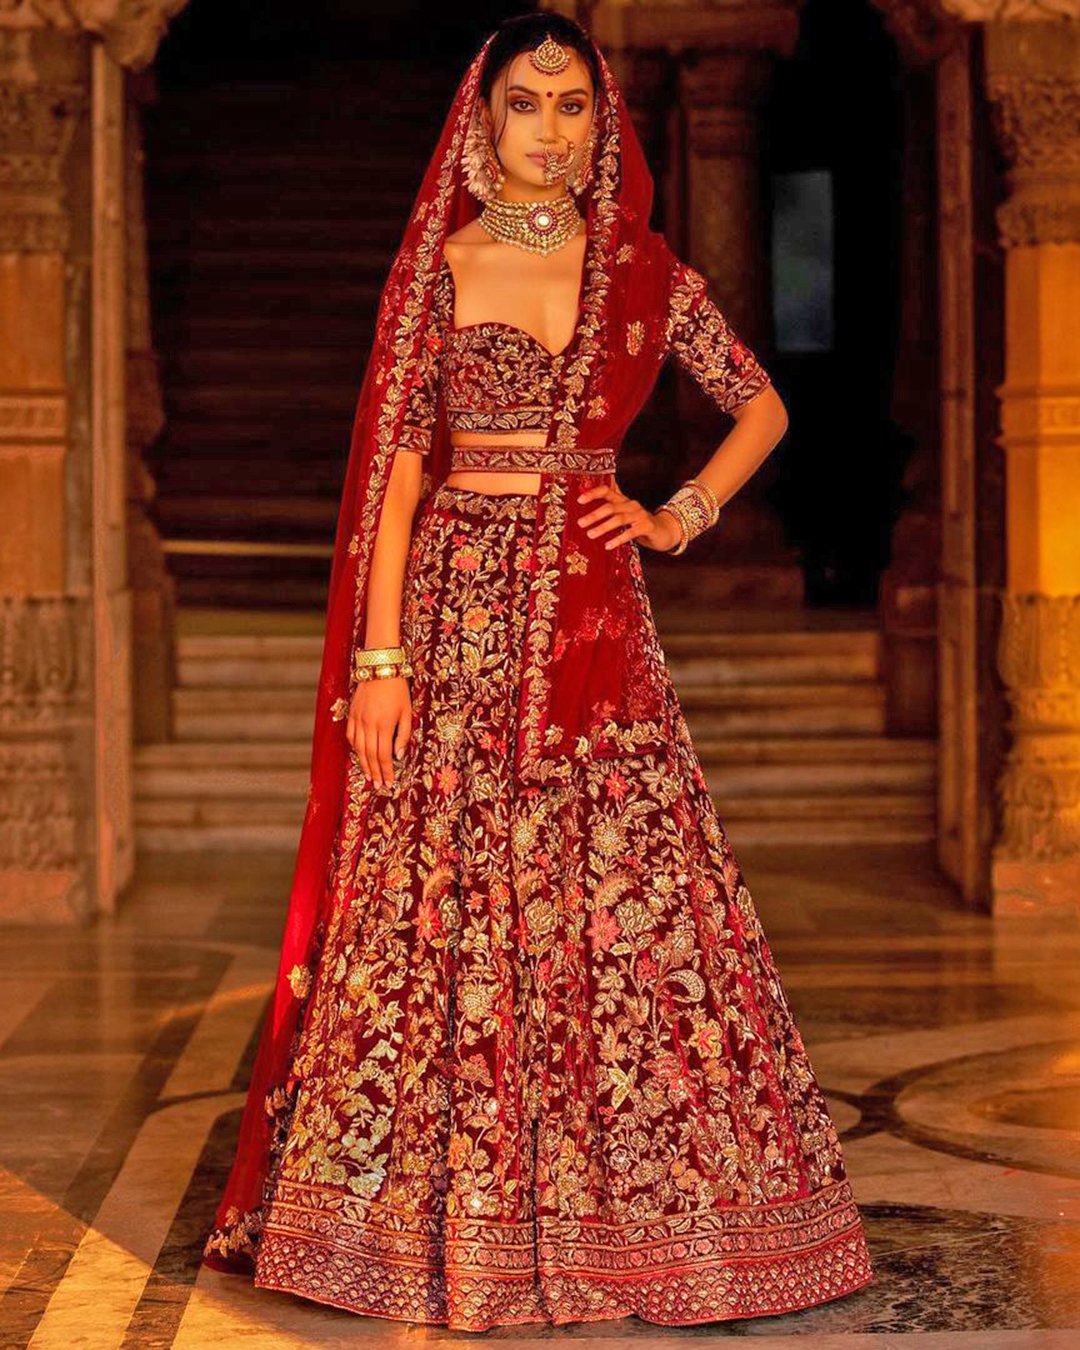 indian wedding dresses red with gold embellishment lelehga shyamalbhumika